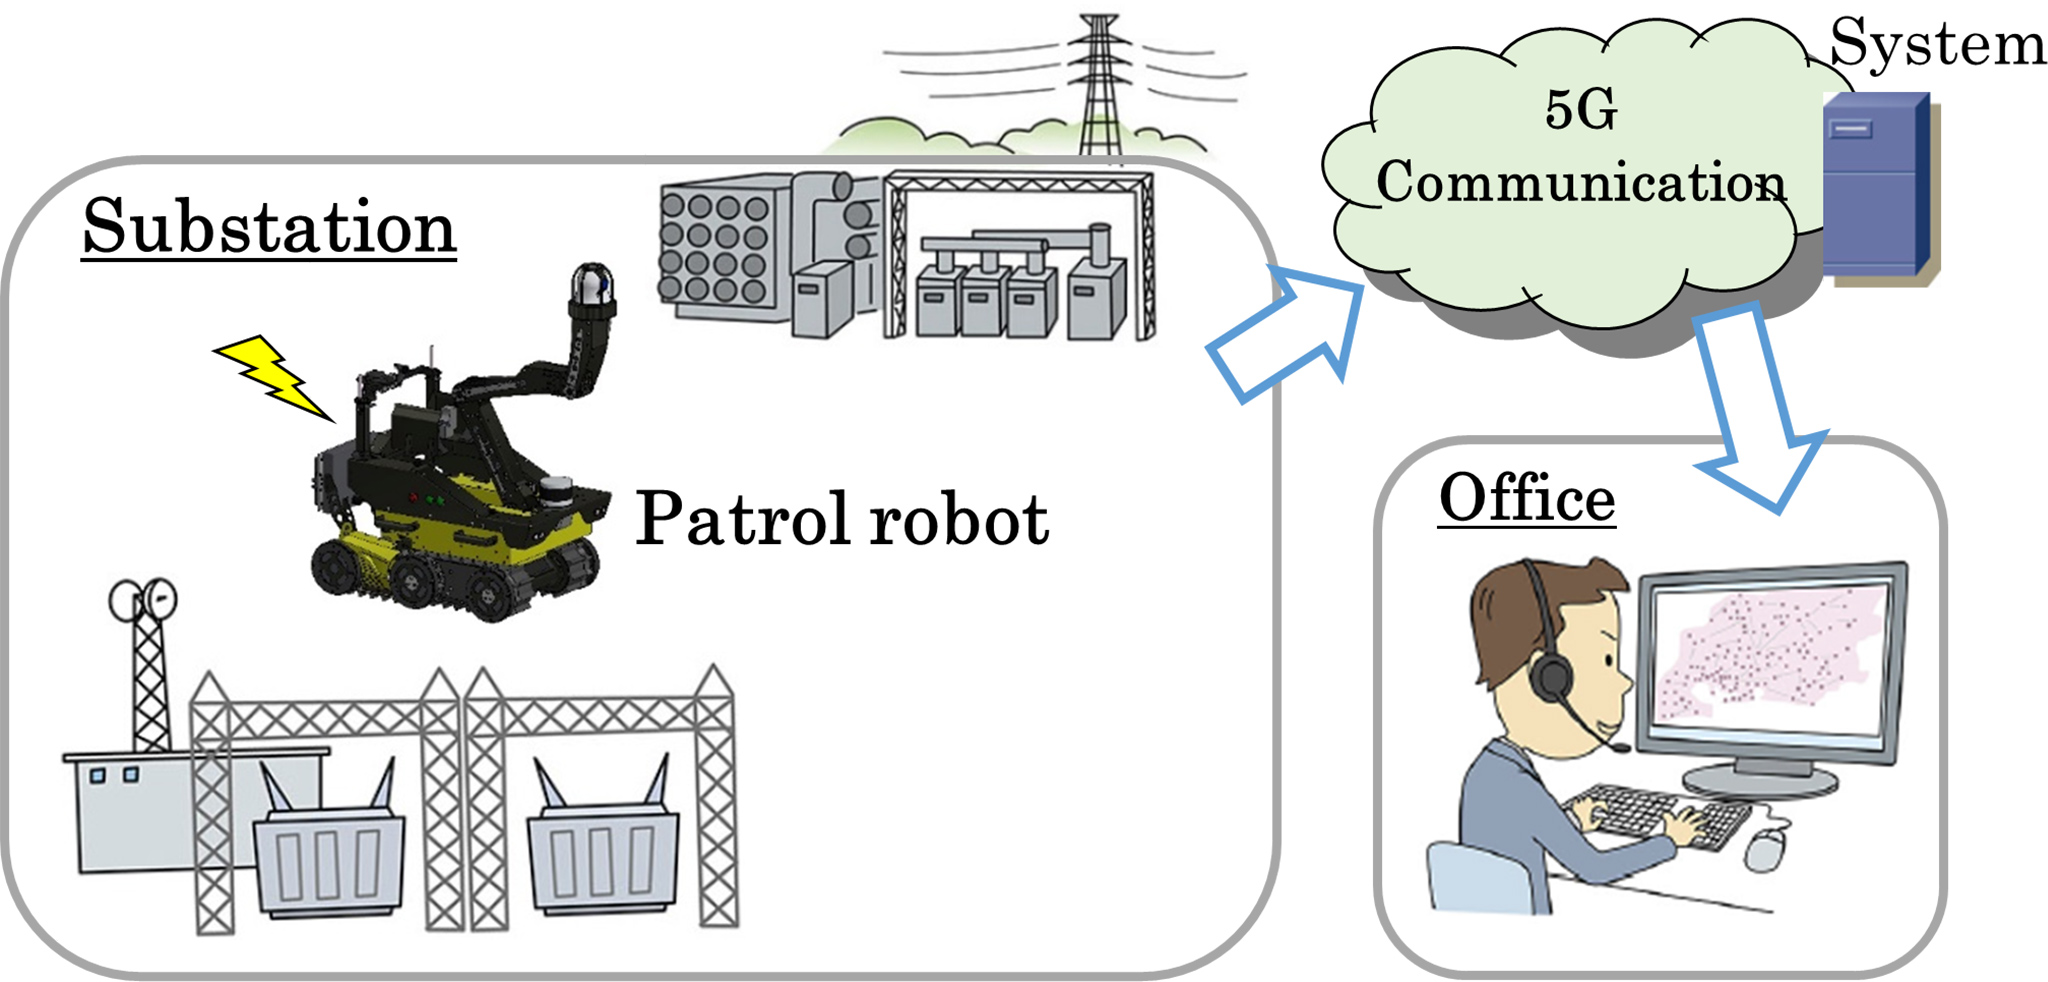 【Substation】Partrol robot 5G Communication System Officer(image)